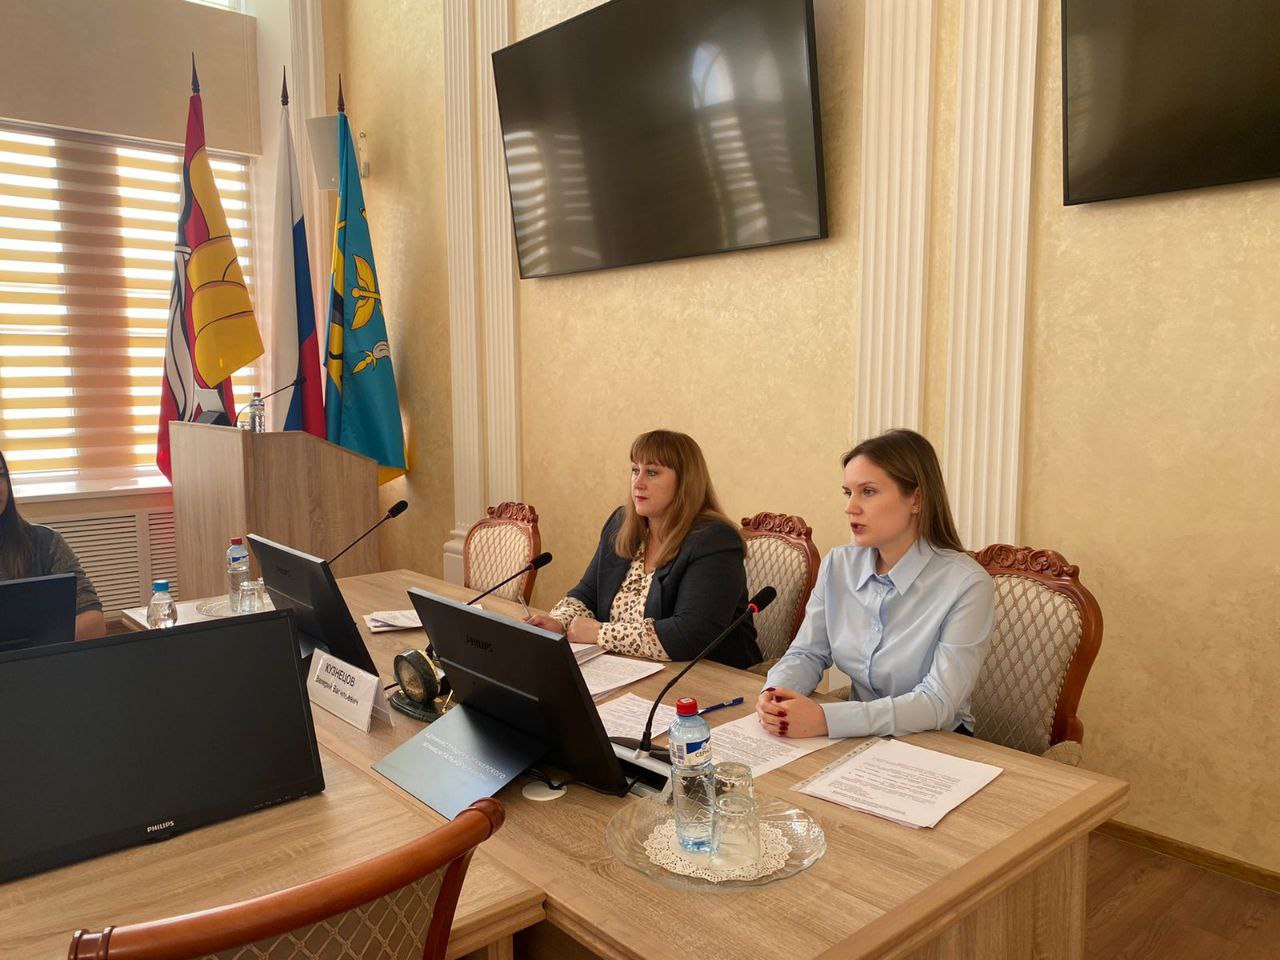 8 декабря, в преддверии Международного дня борьбы с коррупцией, в зале совещаний администрации Богучарского муниципального района проведен круглый стол.